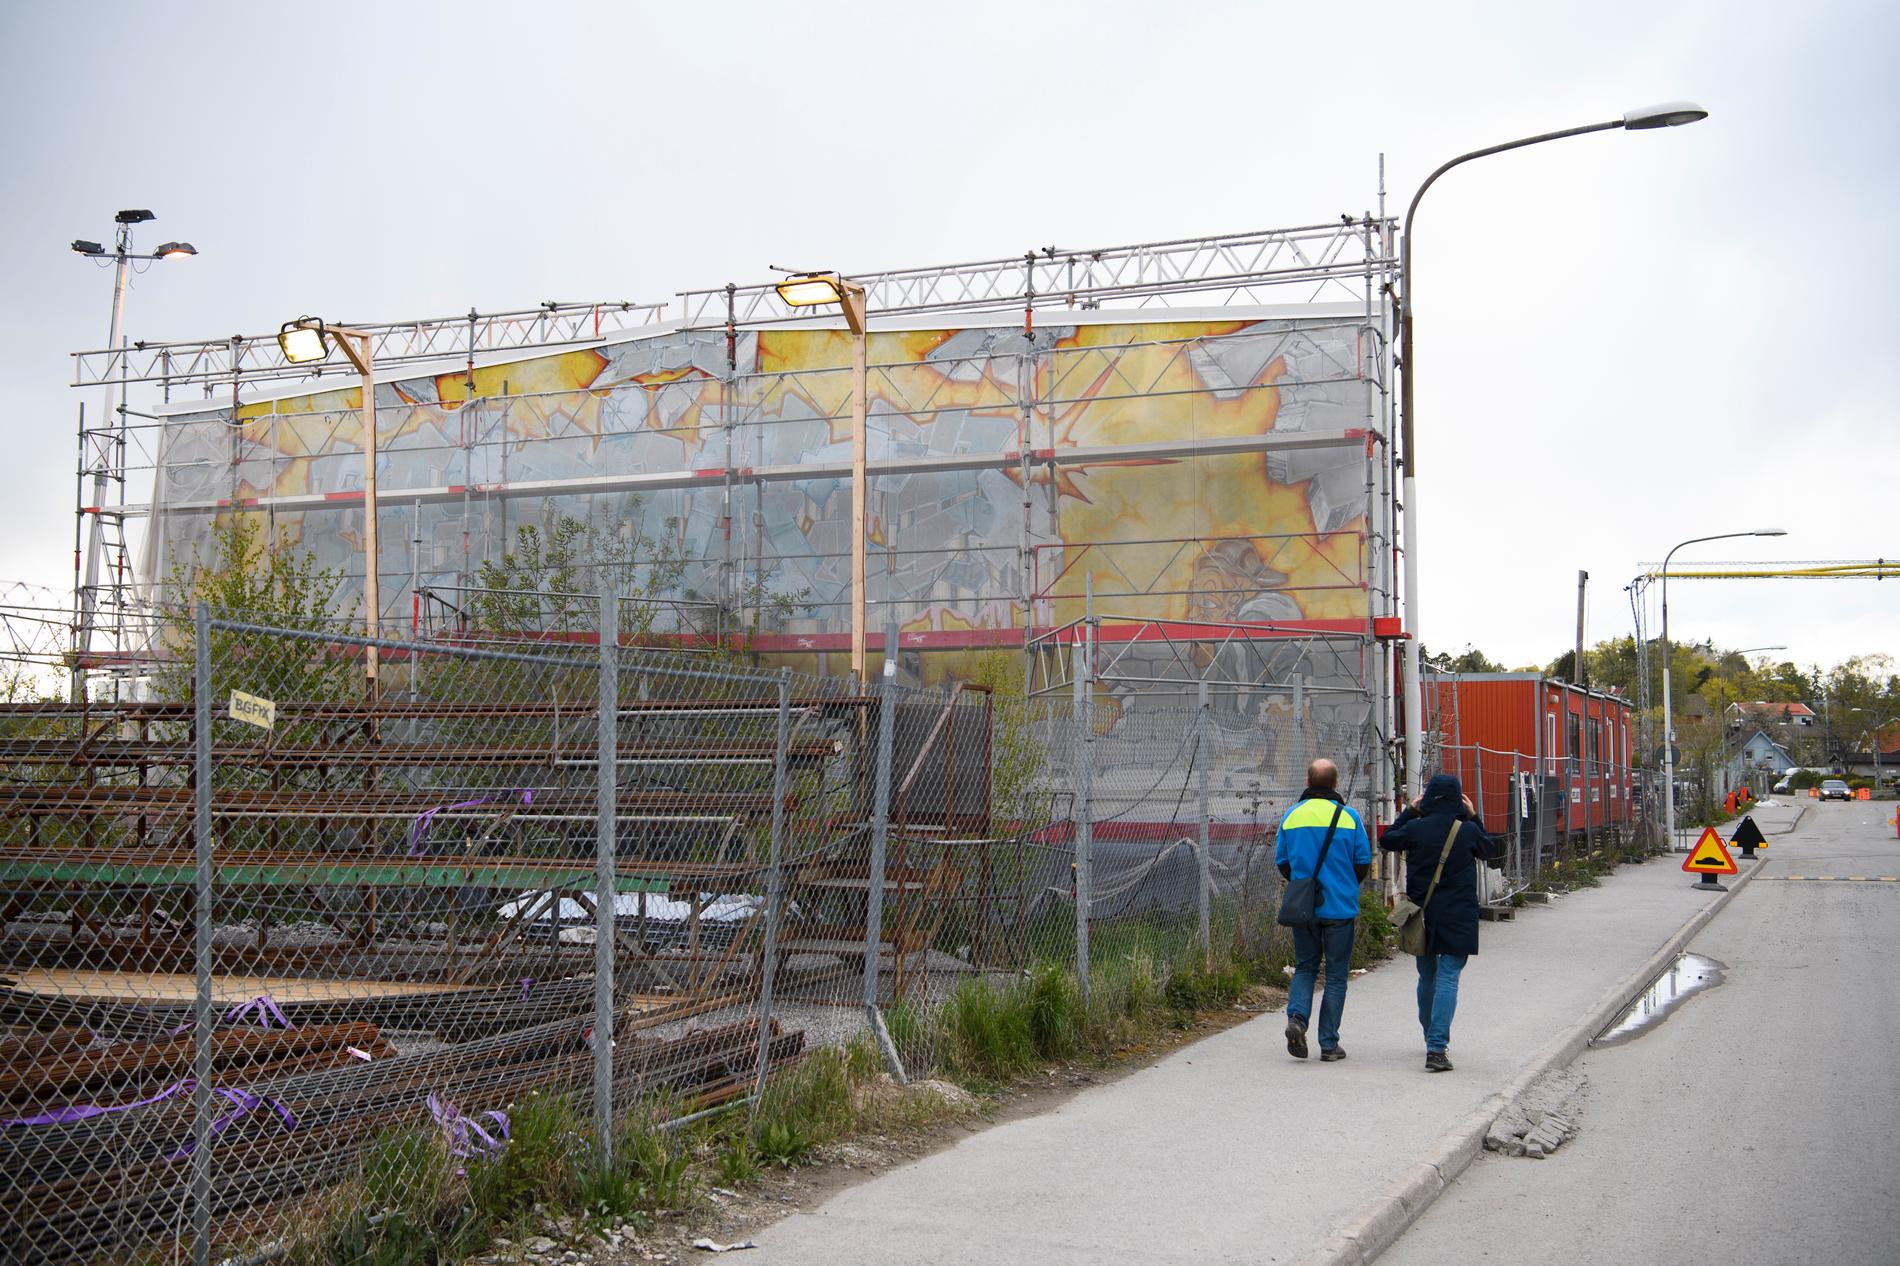 "Fascinate" målades 1989 och var då norra Europas största graffitimålning, den utfördes på en yttervägg till en industribyggnad med fastighetsägarens tillstånd. Hösten 2015 k-märktes verket, trots att resten av byggnaden revs. I april 2020 beslutade exploateringsnämnden i Stockholms stad att industriväggen ska rivas, på grund av rasrisk. Arkivbild.